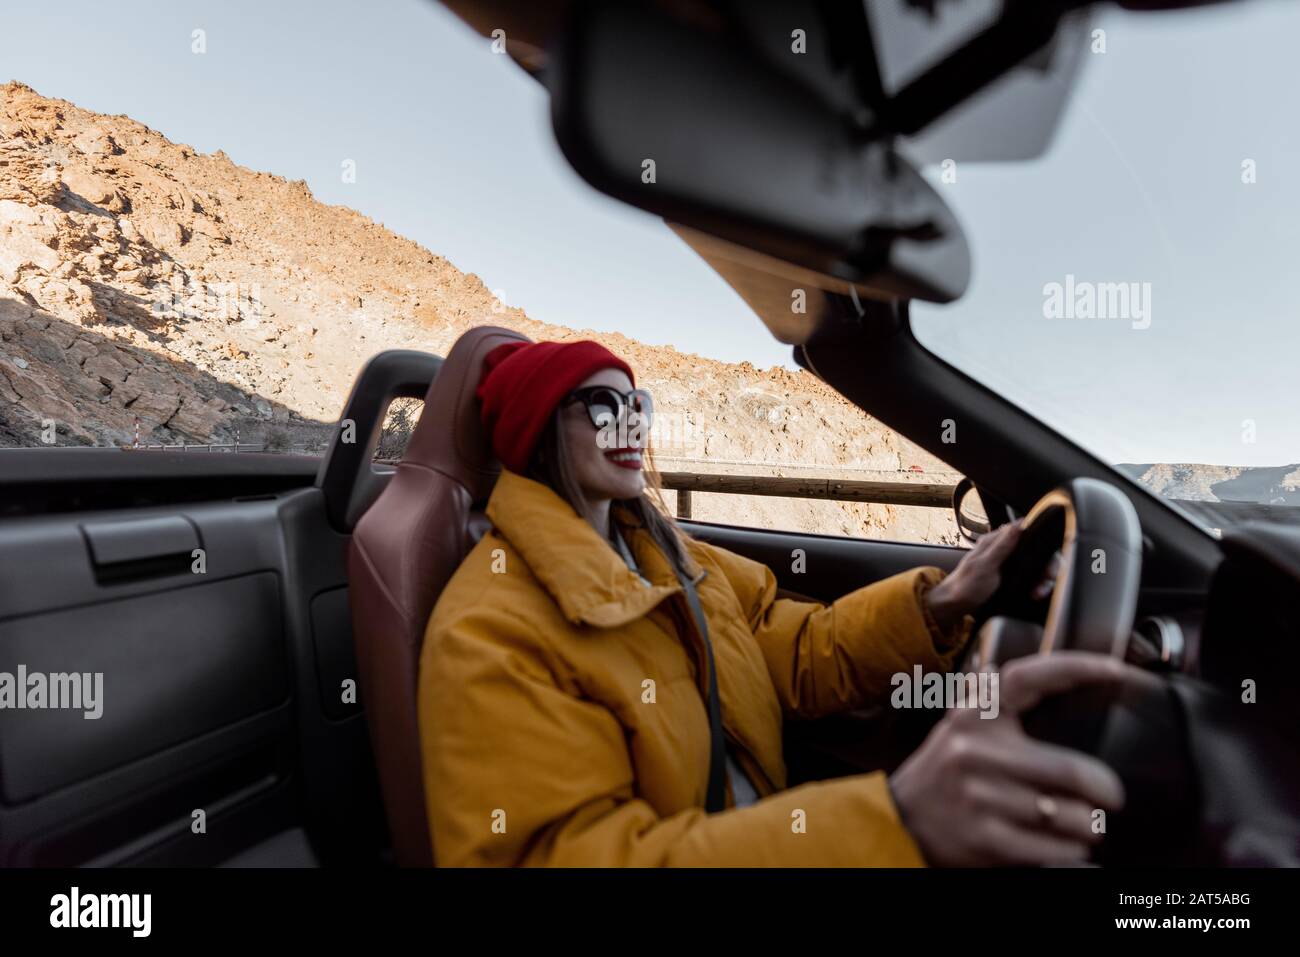 Donna felice in cappello e giacca brillante guida auto convertibile durante il viaggio sulla strada del deserto su un tramonto. Immagine focalizzata sullo sfondo, donna è fuori fuoco Foto Stock